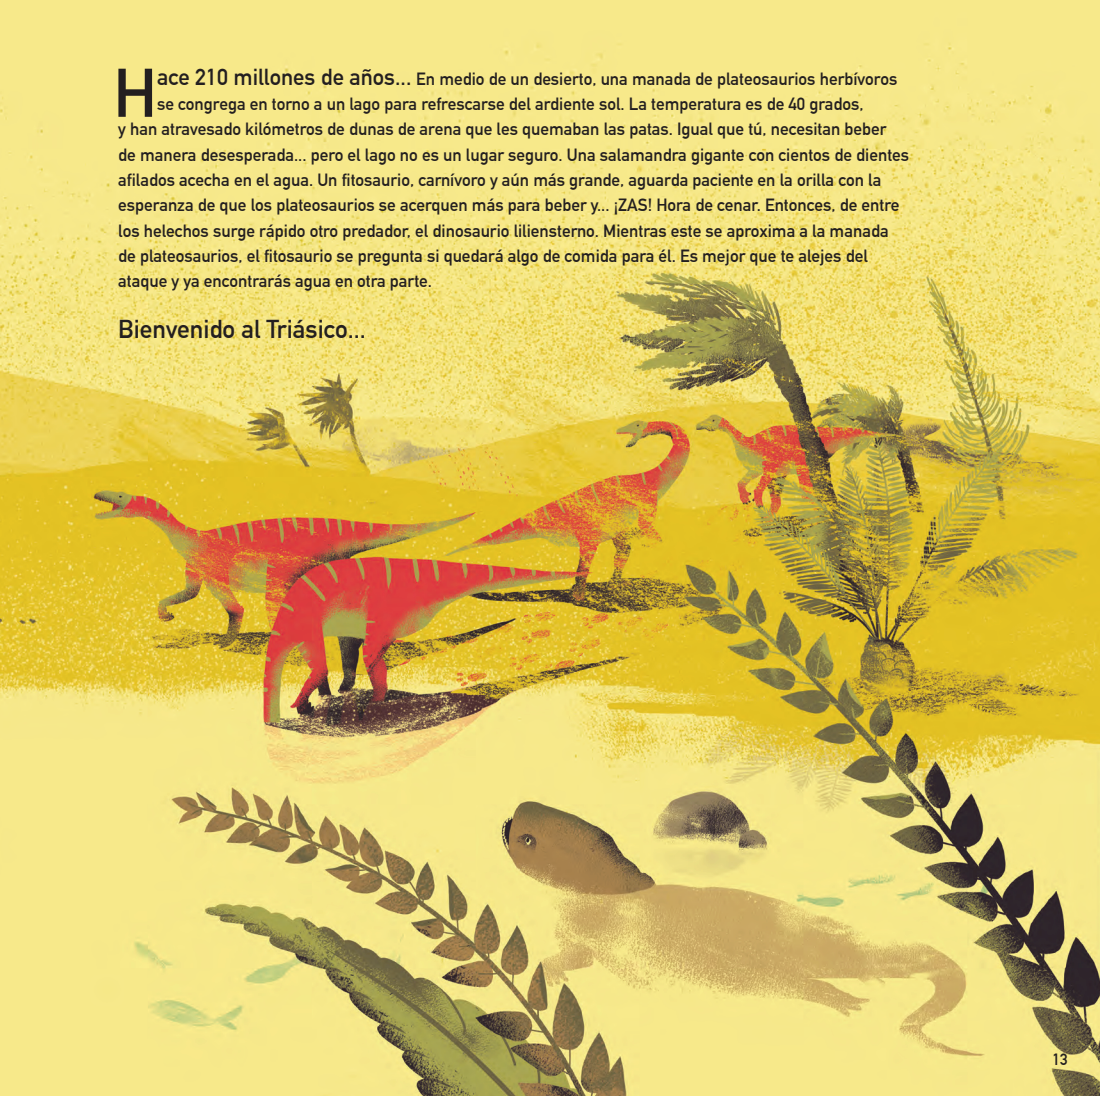 L'âge des dinosaures